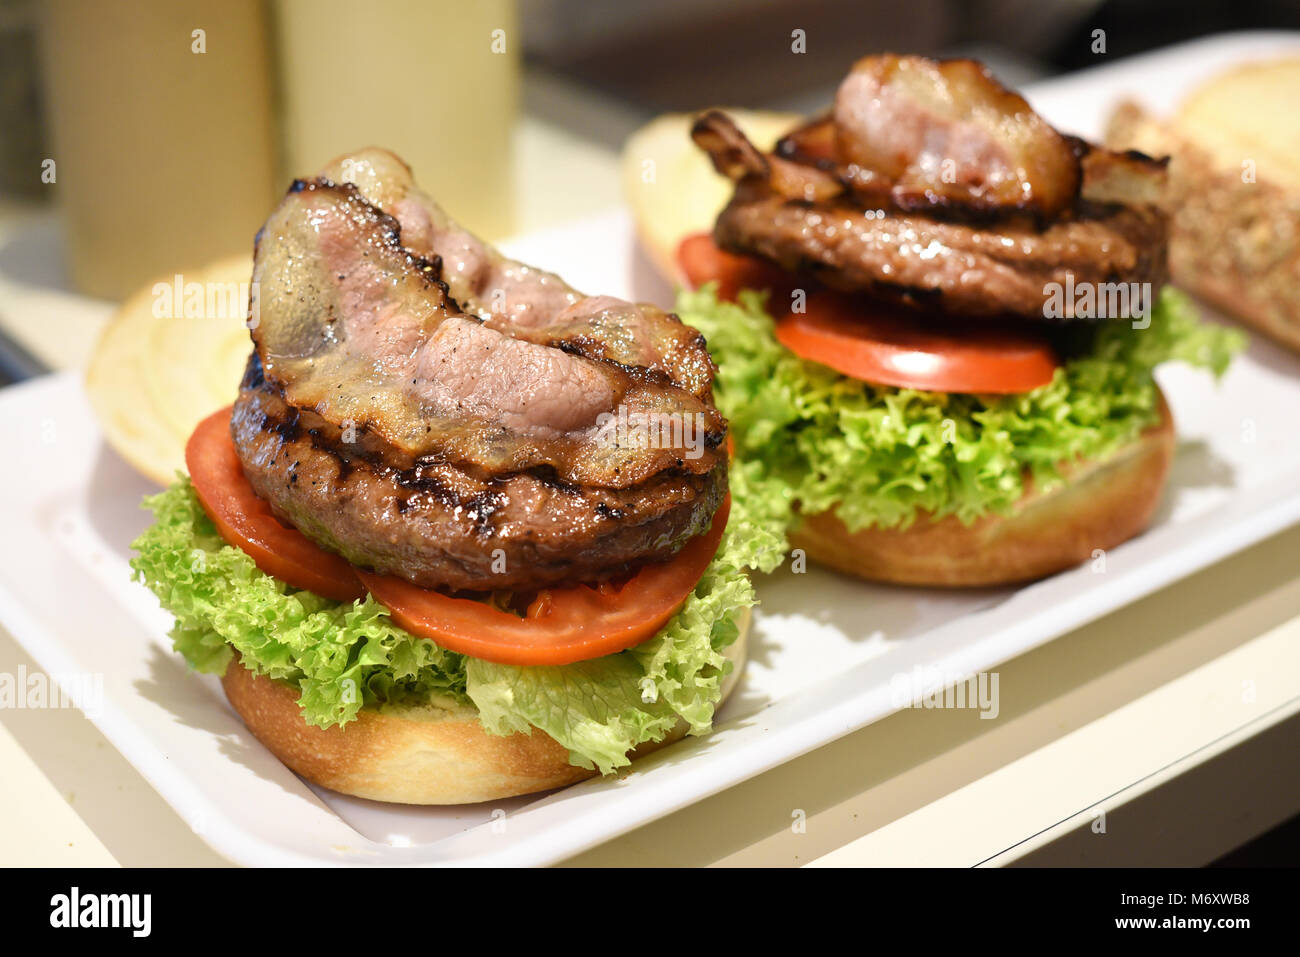 Vorbereitung eines Hamburger in einem Restaurant mit frischen Salat Garnituren, Rindfleisch Patty und Speck Speckscheiben auf einem weißen Brötchen auf ein fach geschichtet Stockfoto